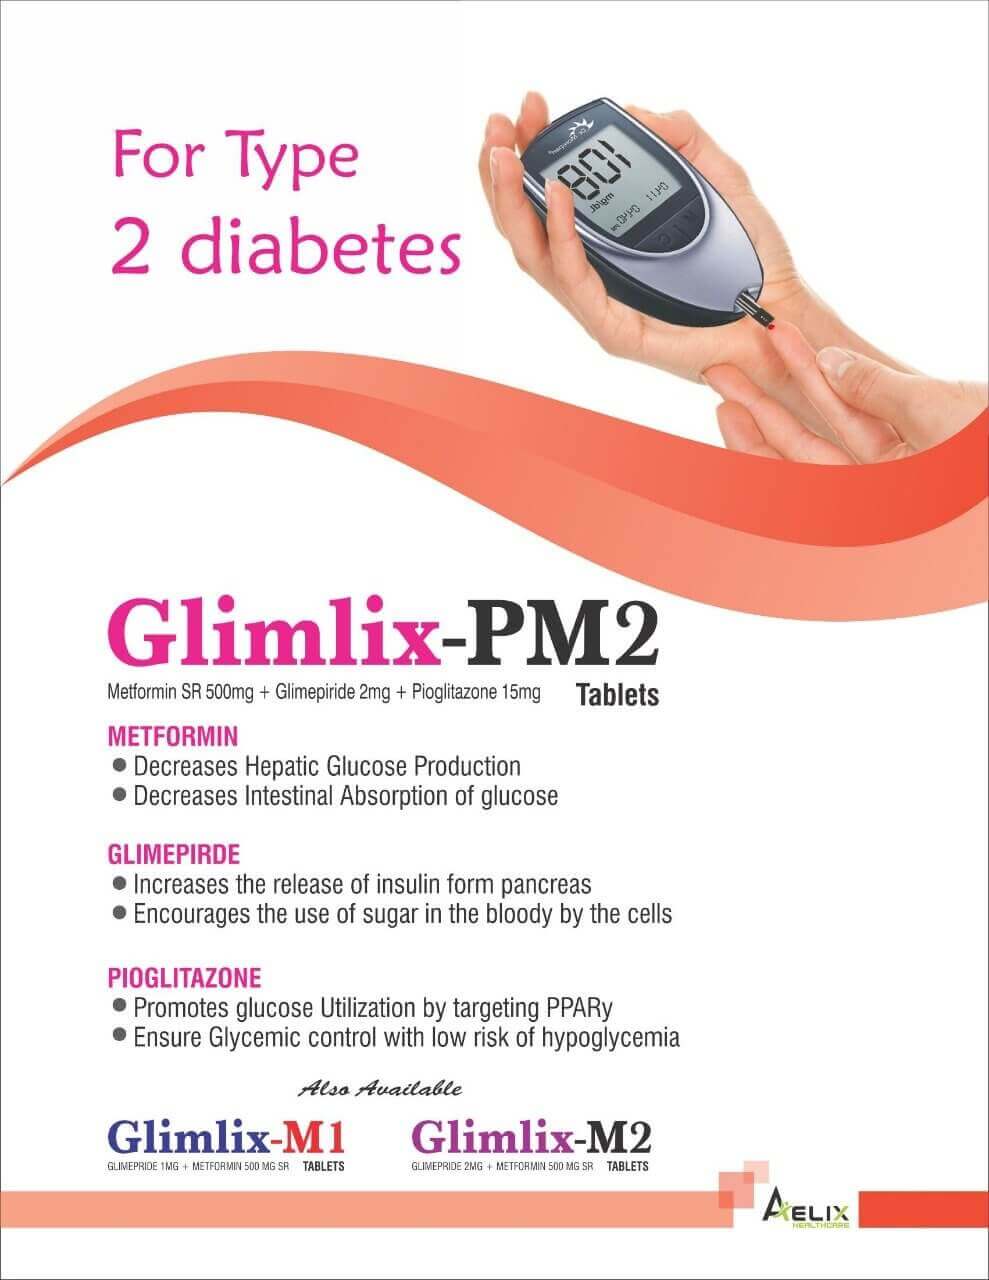 Glimlix-PM2